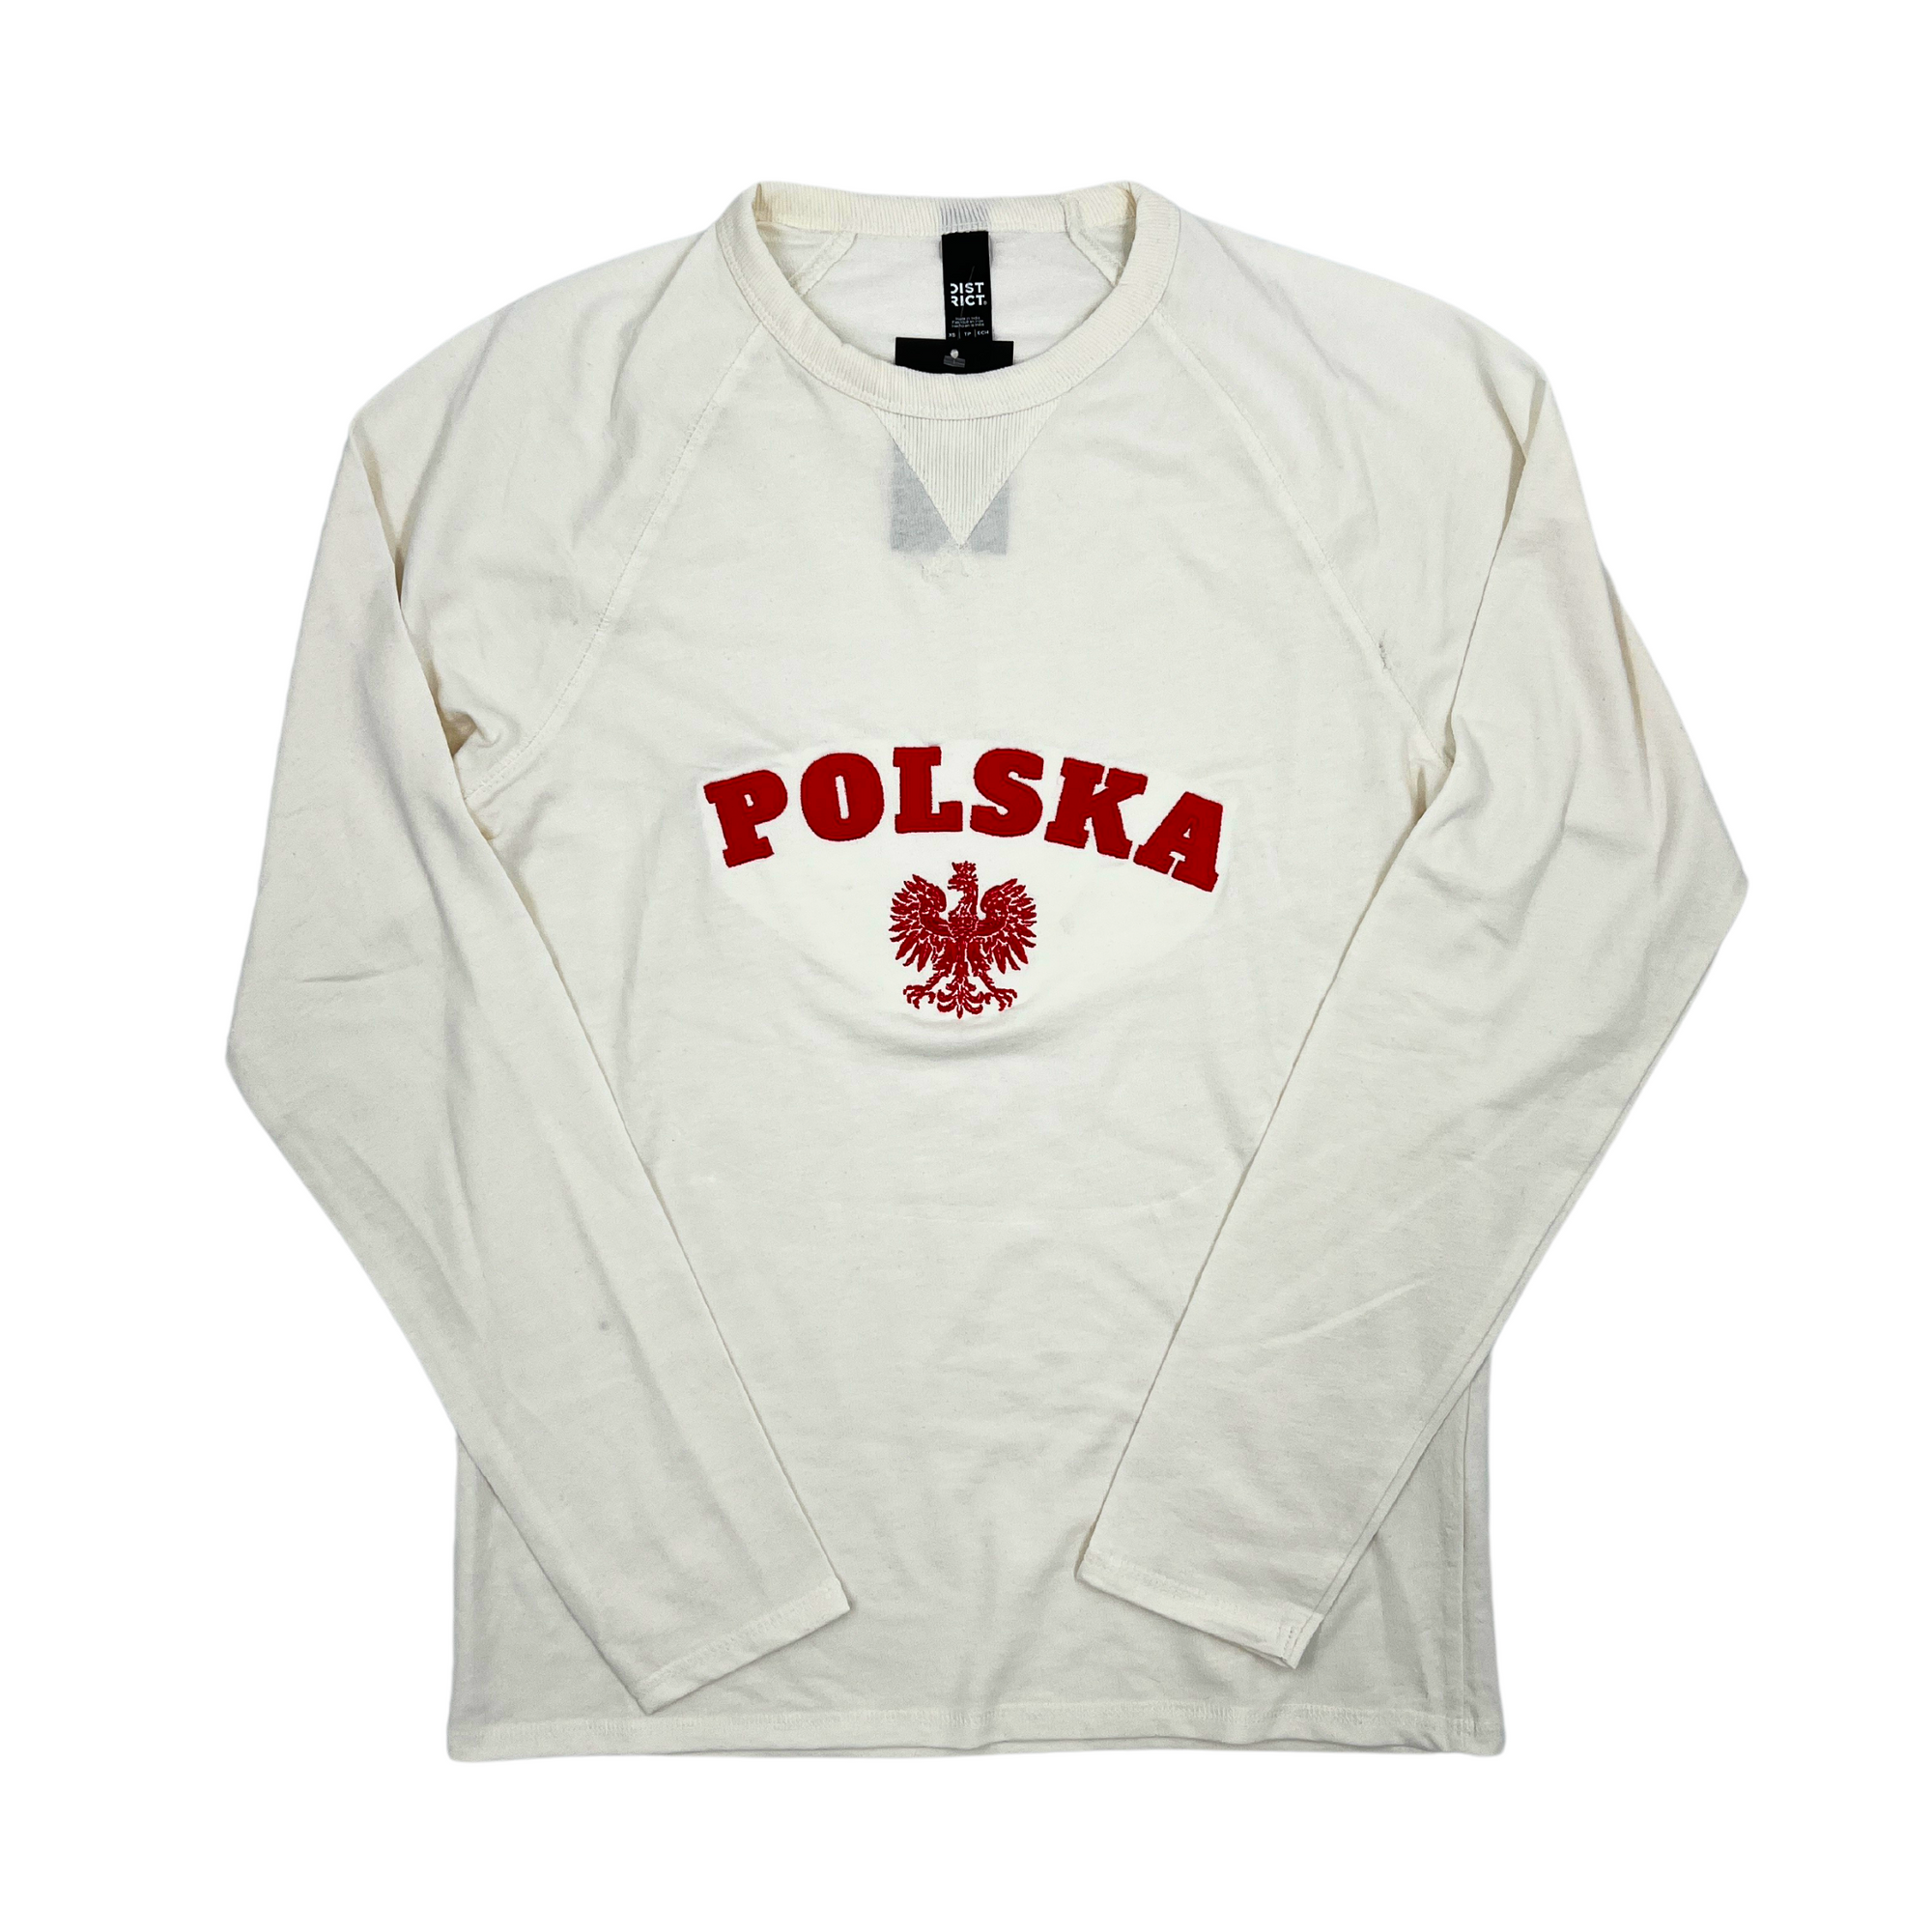 Polska wordmark With The White Eagle logo French Terry Cream Shirt